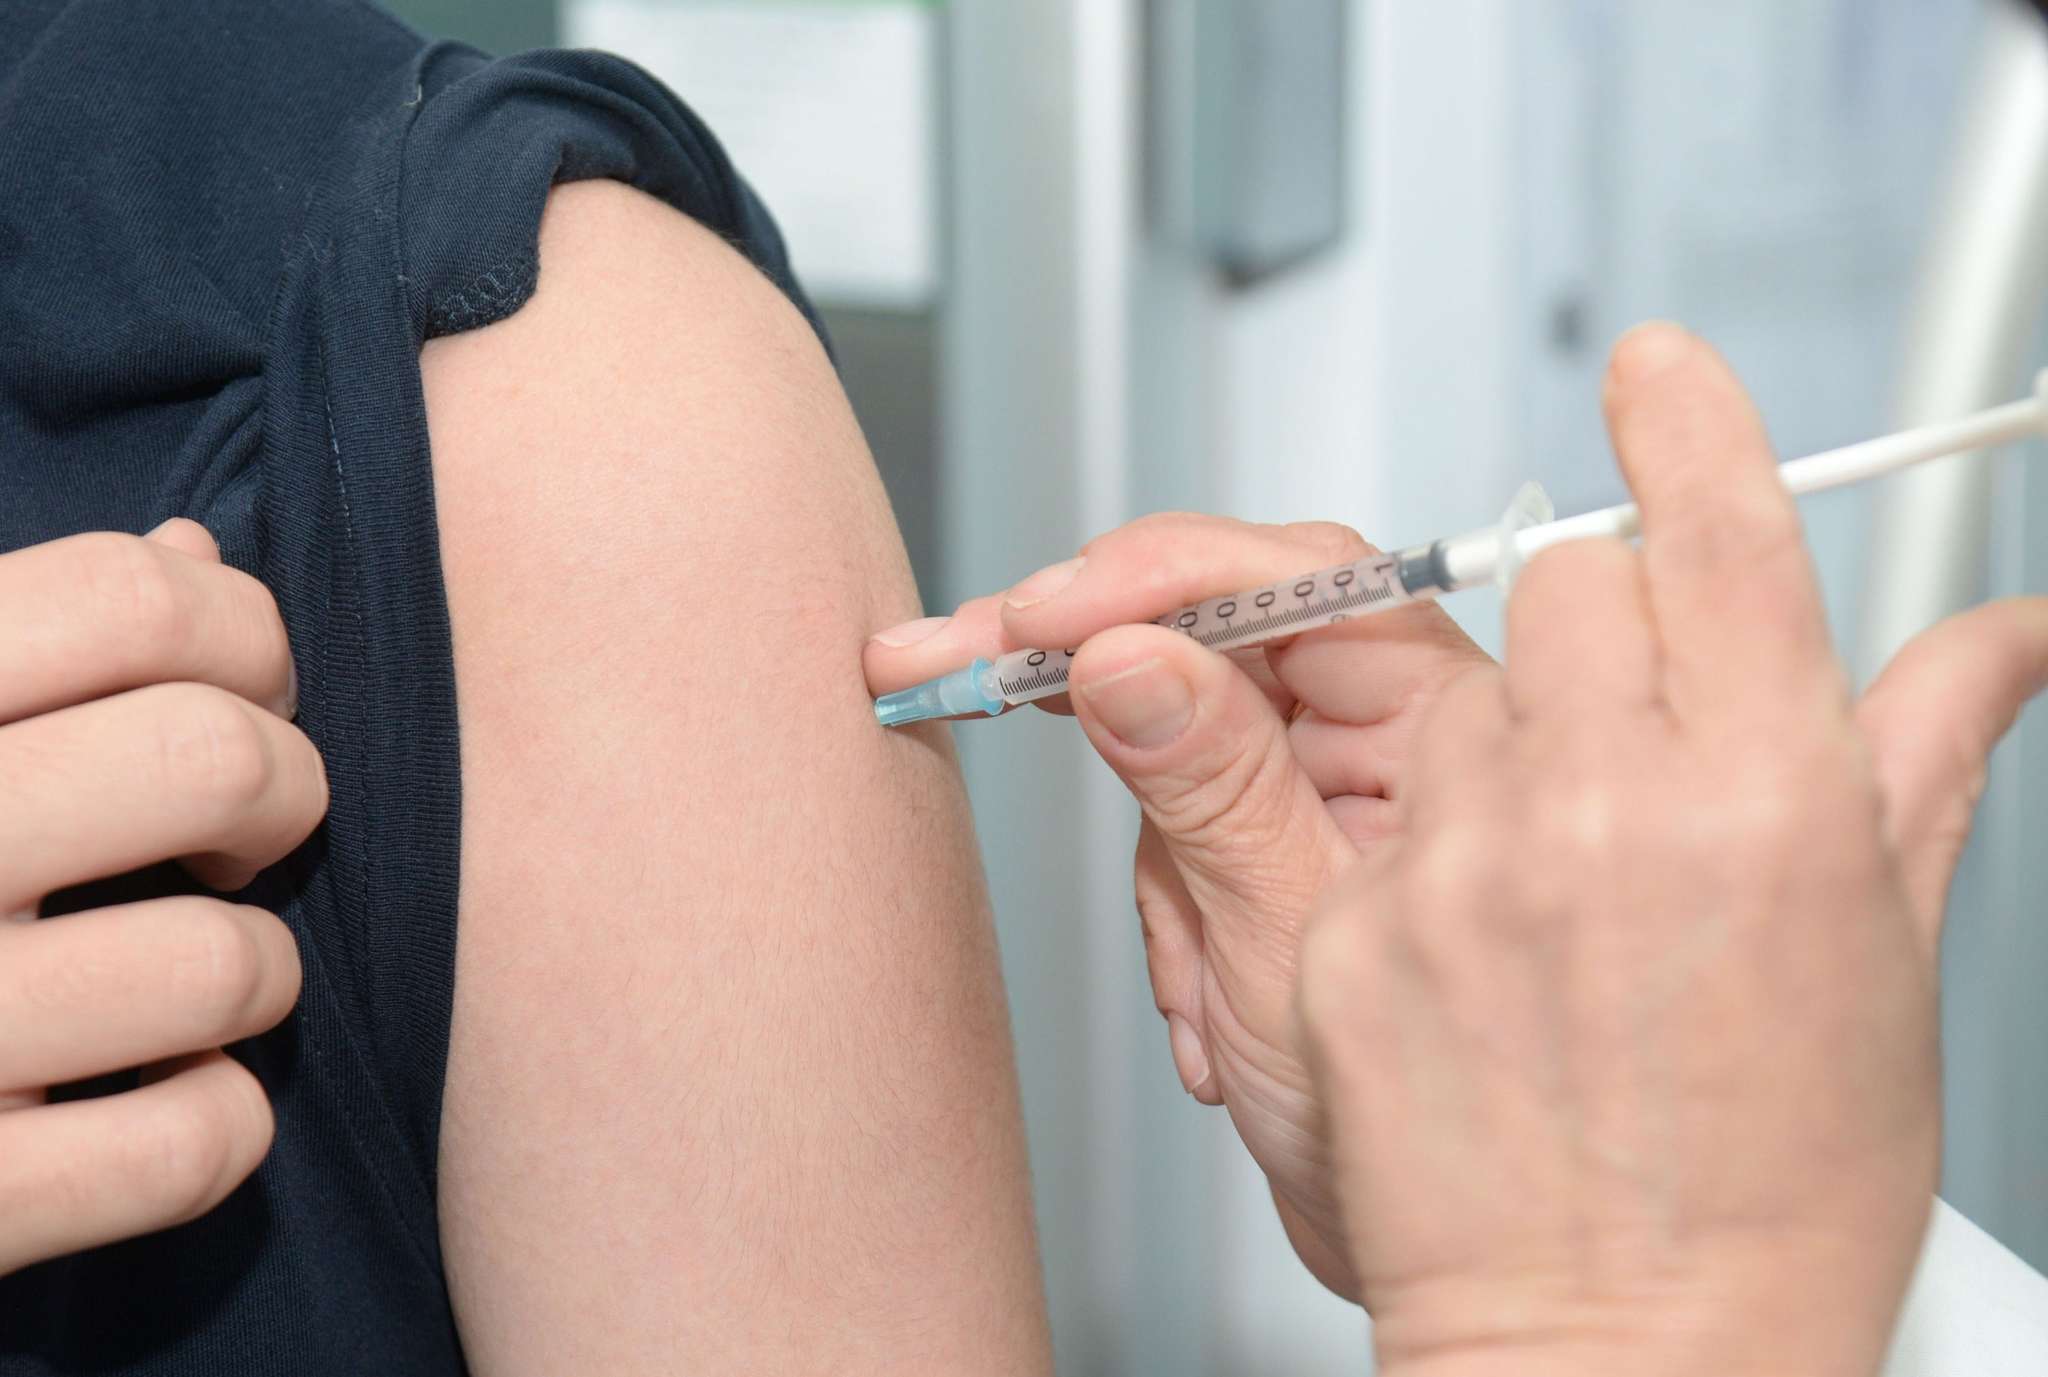 Rechtenvrije foto waarop iemand een vaccinatie krijgt toegediend.